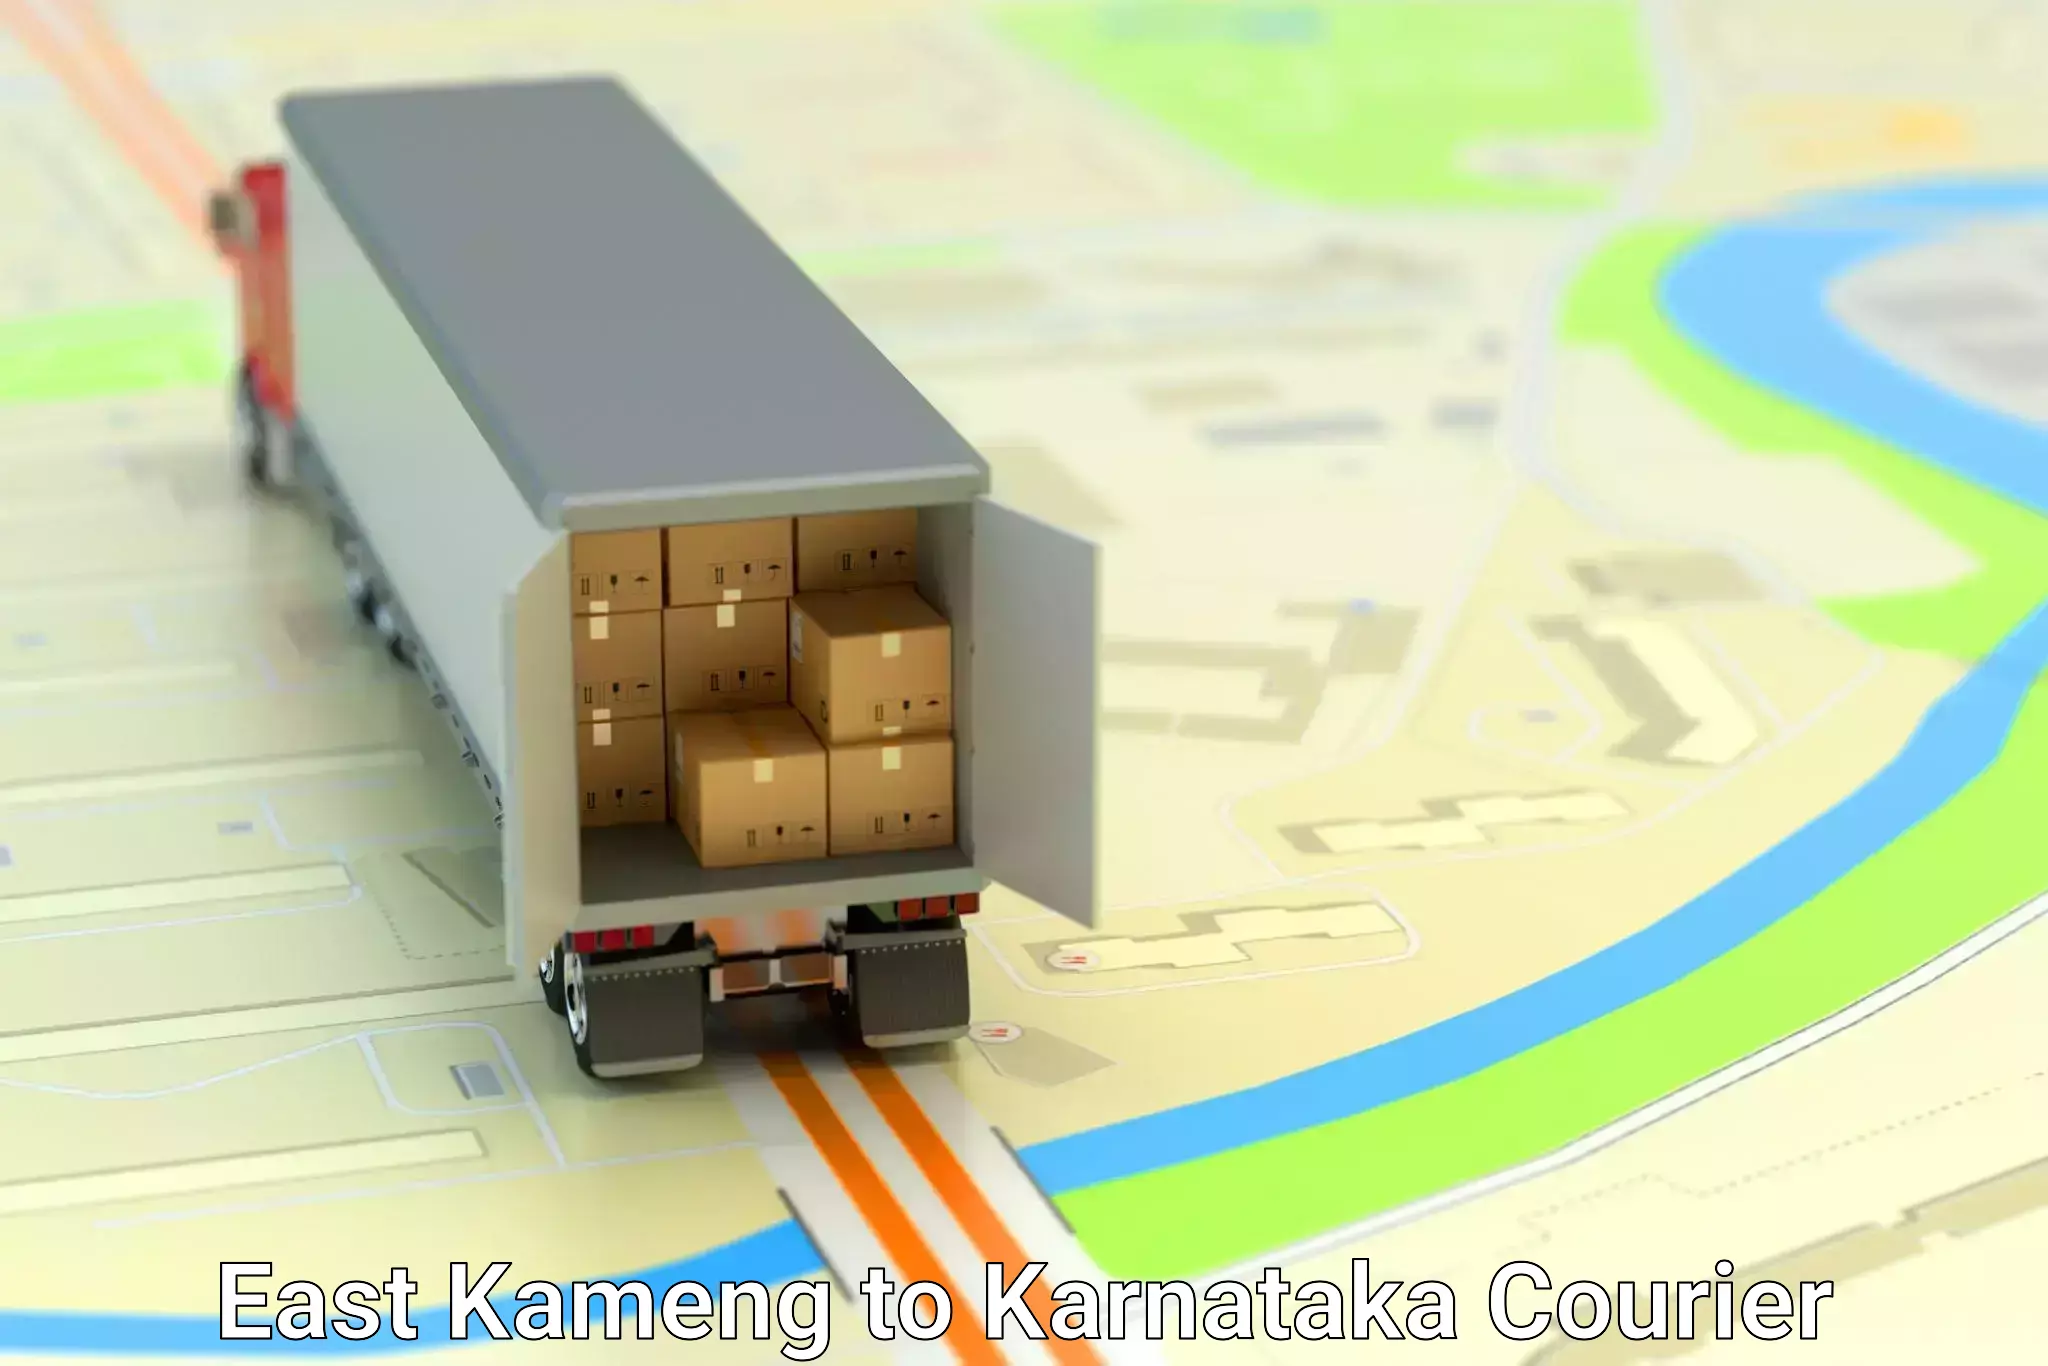 Global shipping networks East Kameng to Kodagu